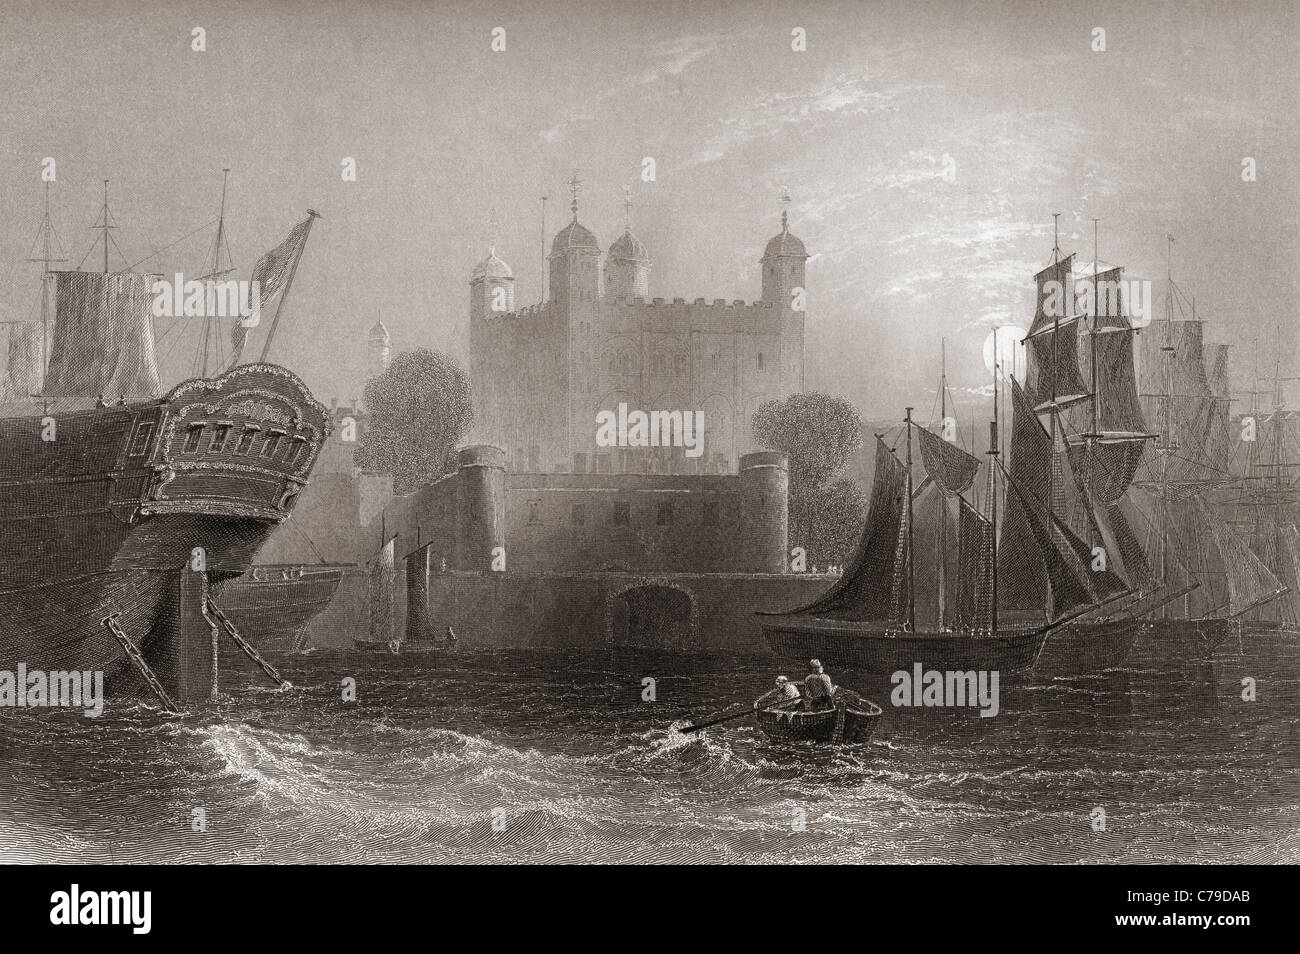 La Tour de Londres, Londres, Angleterre au début du 19e siècle Banque D'Images